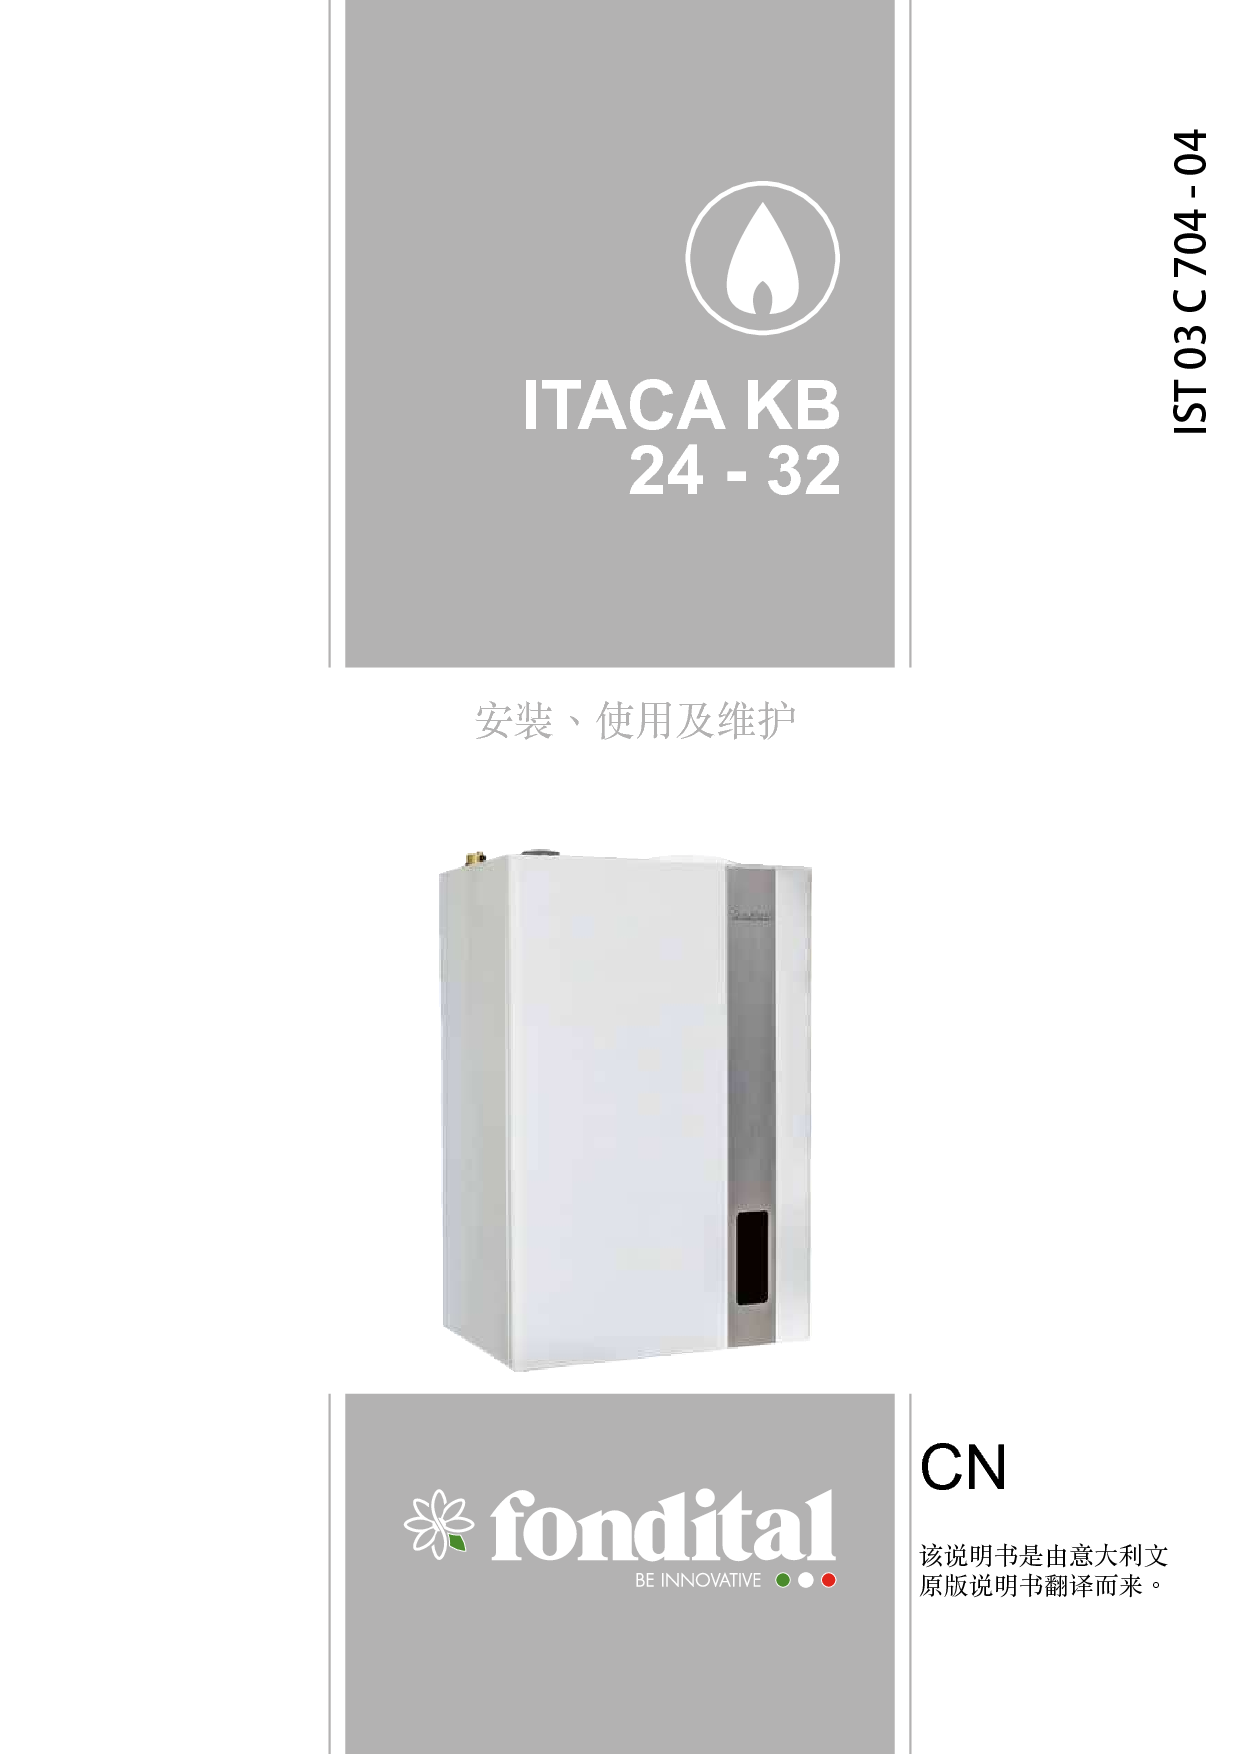 凡帝都 Fondital ITACA KB 24 安装使用手册 封面